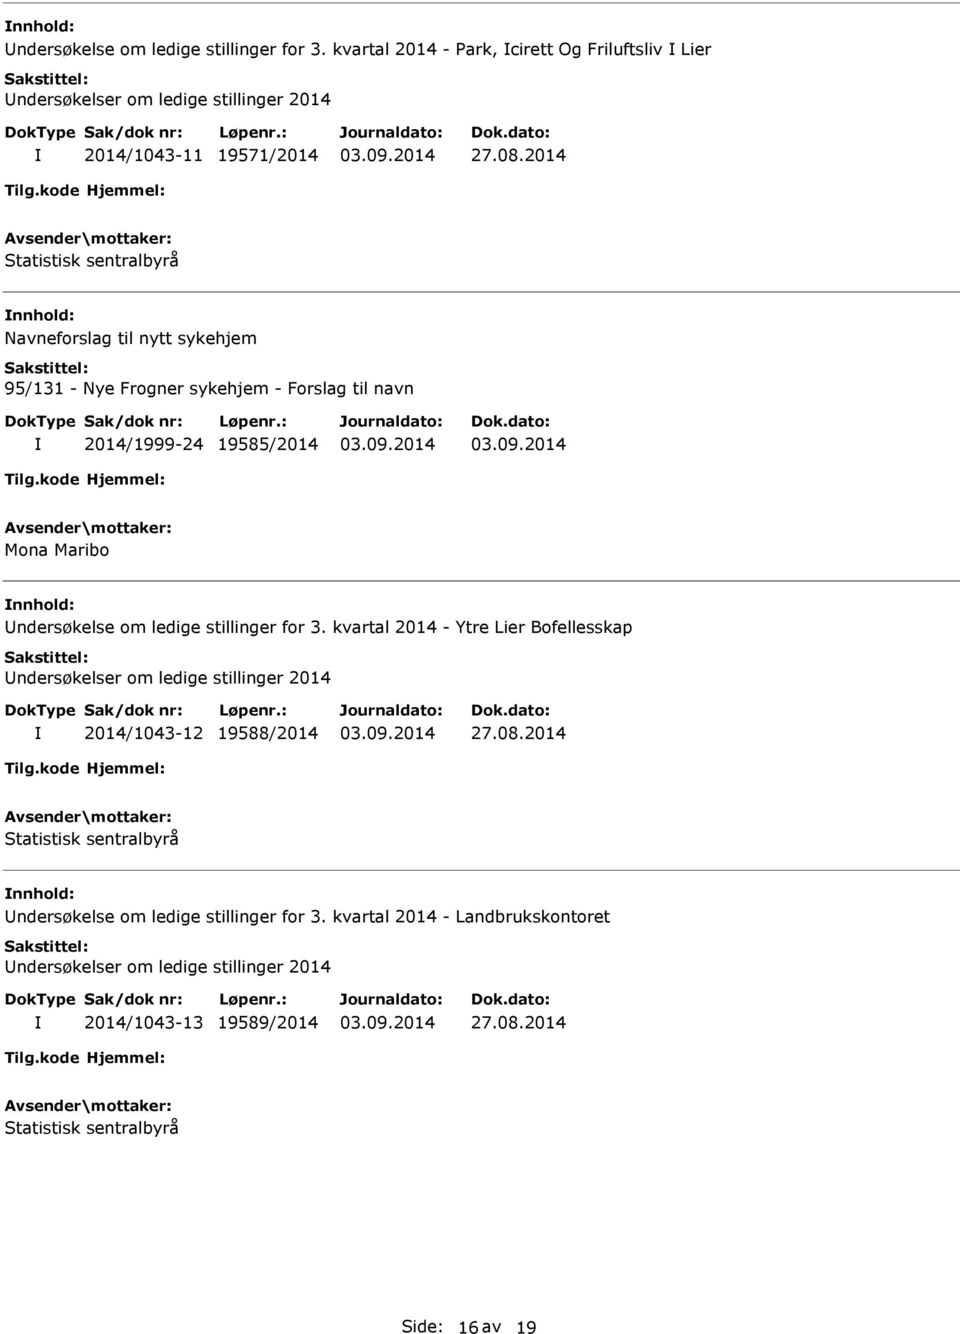 ledige stillinger for 3. kvartal 2014 - Ytre Lier Bofellesskap ndersøkelser om ledige stillinger 2014 2014/1043-12 19588/2014 27.08.